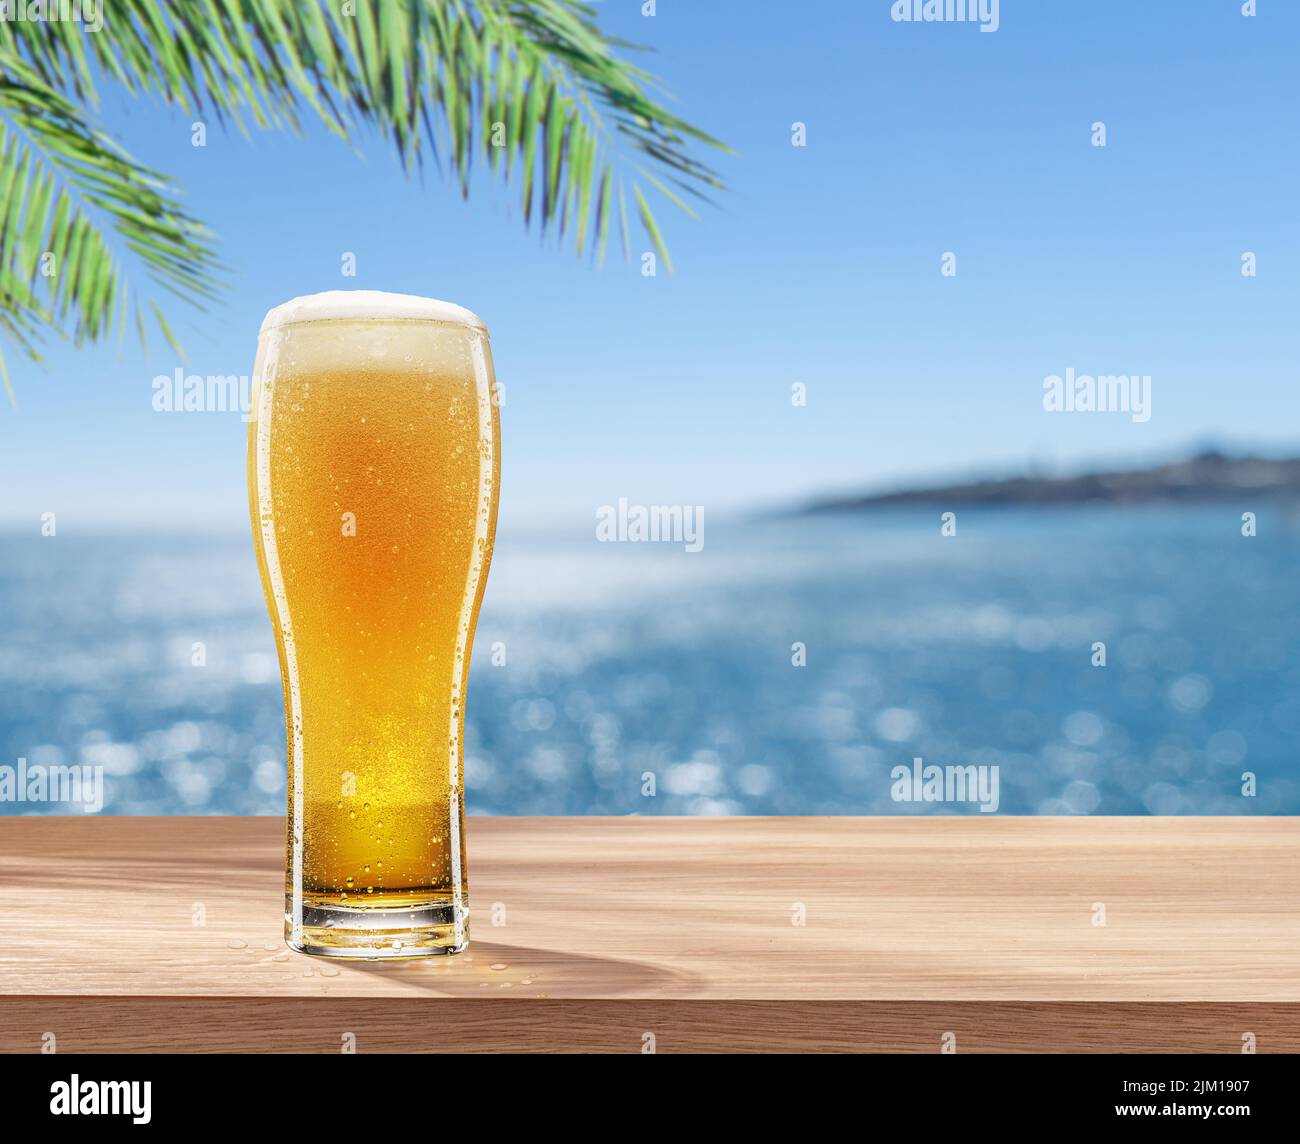 Vaso de cerveza fría sobre la mesa y un mar borroso y brillante al fondo. Lugar para mostrar su nombre de producto o marca. Foto de stock